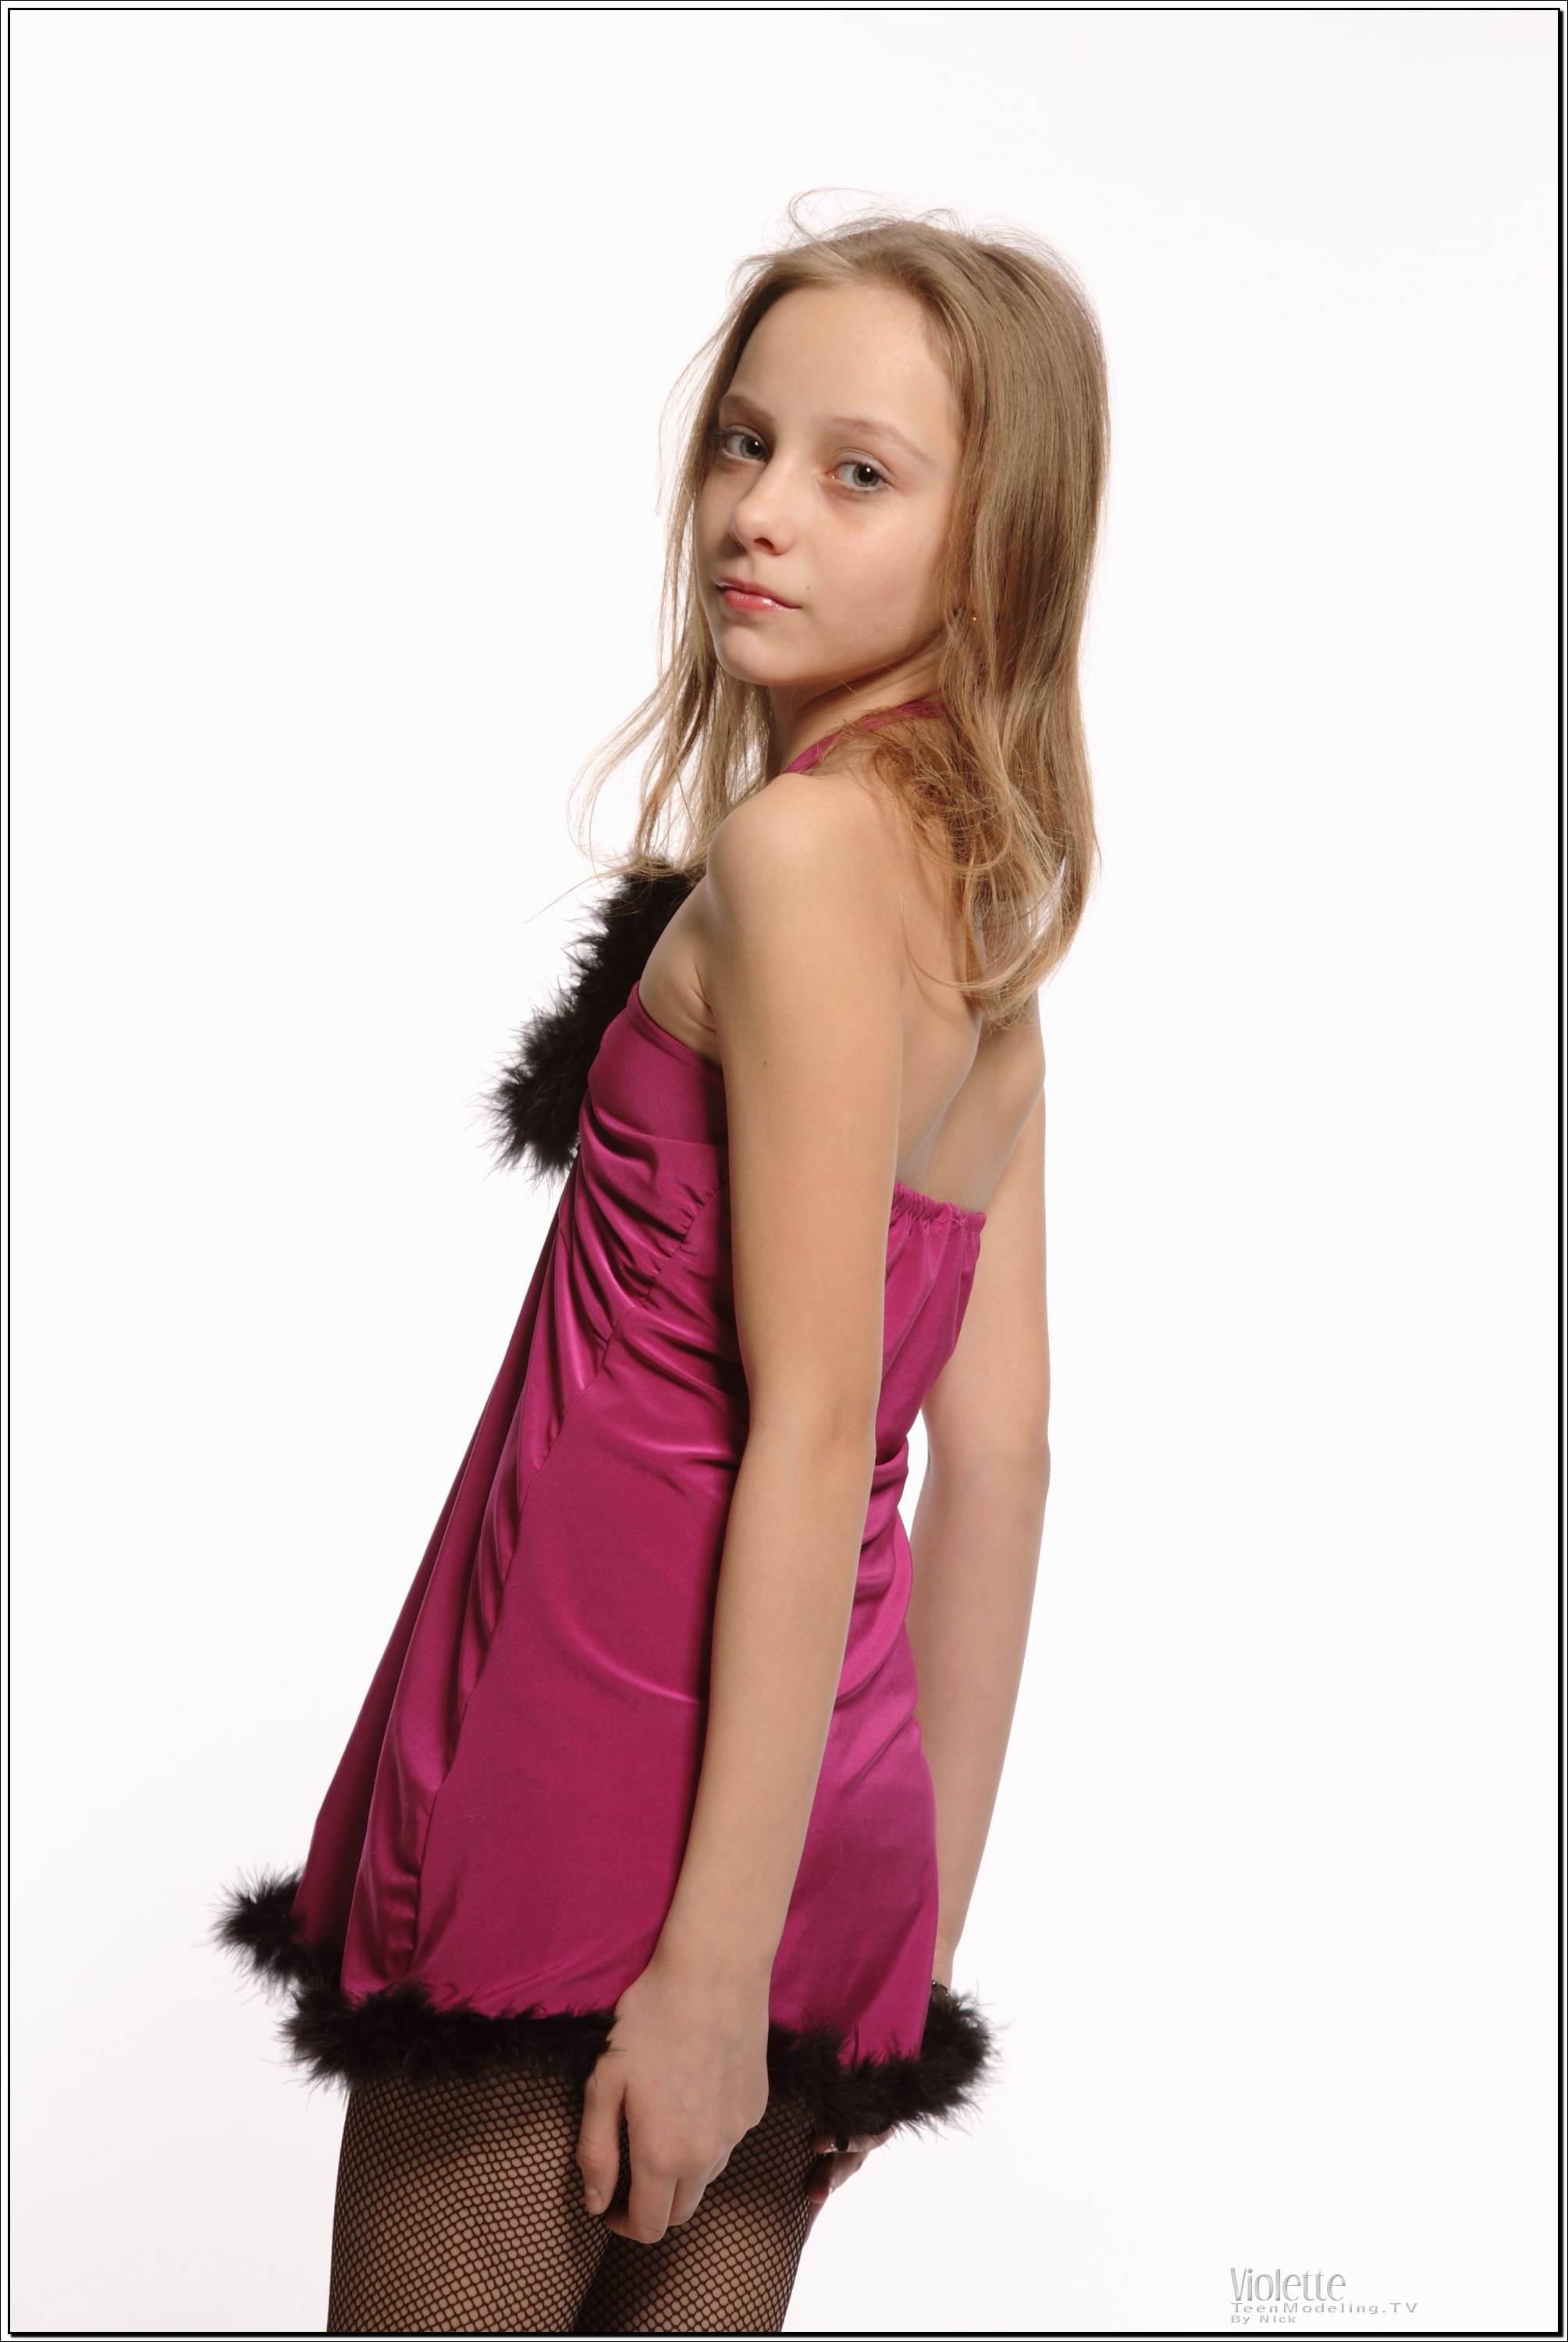 violette_model_pinkhalter_teenmodeling_tv_020.jpg